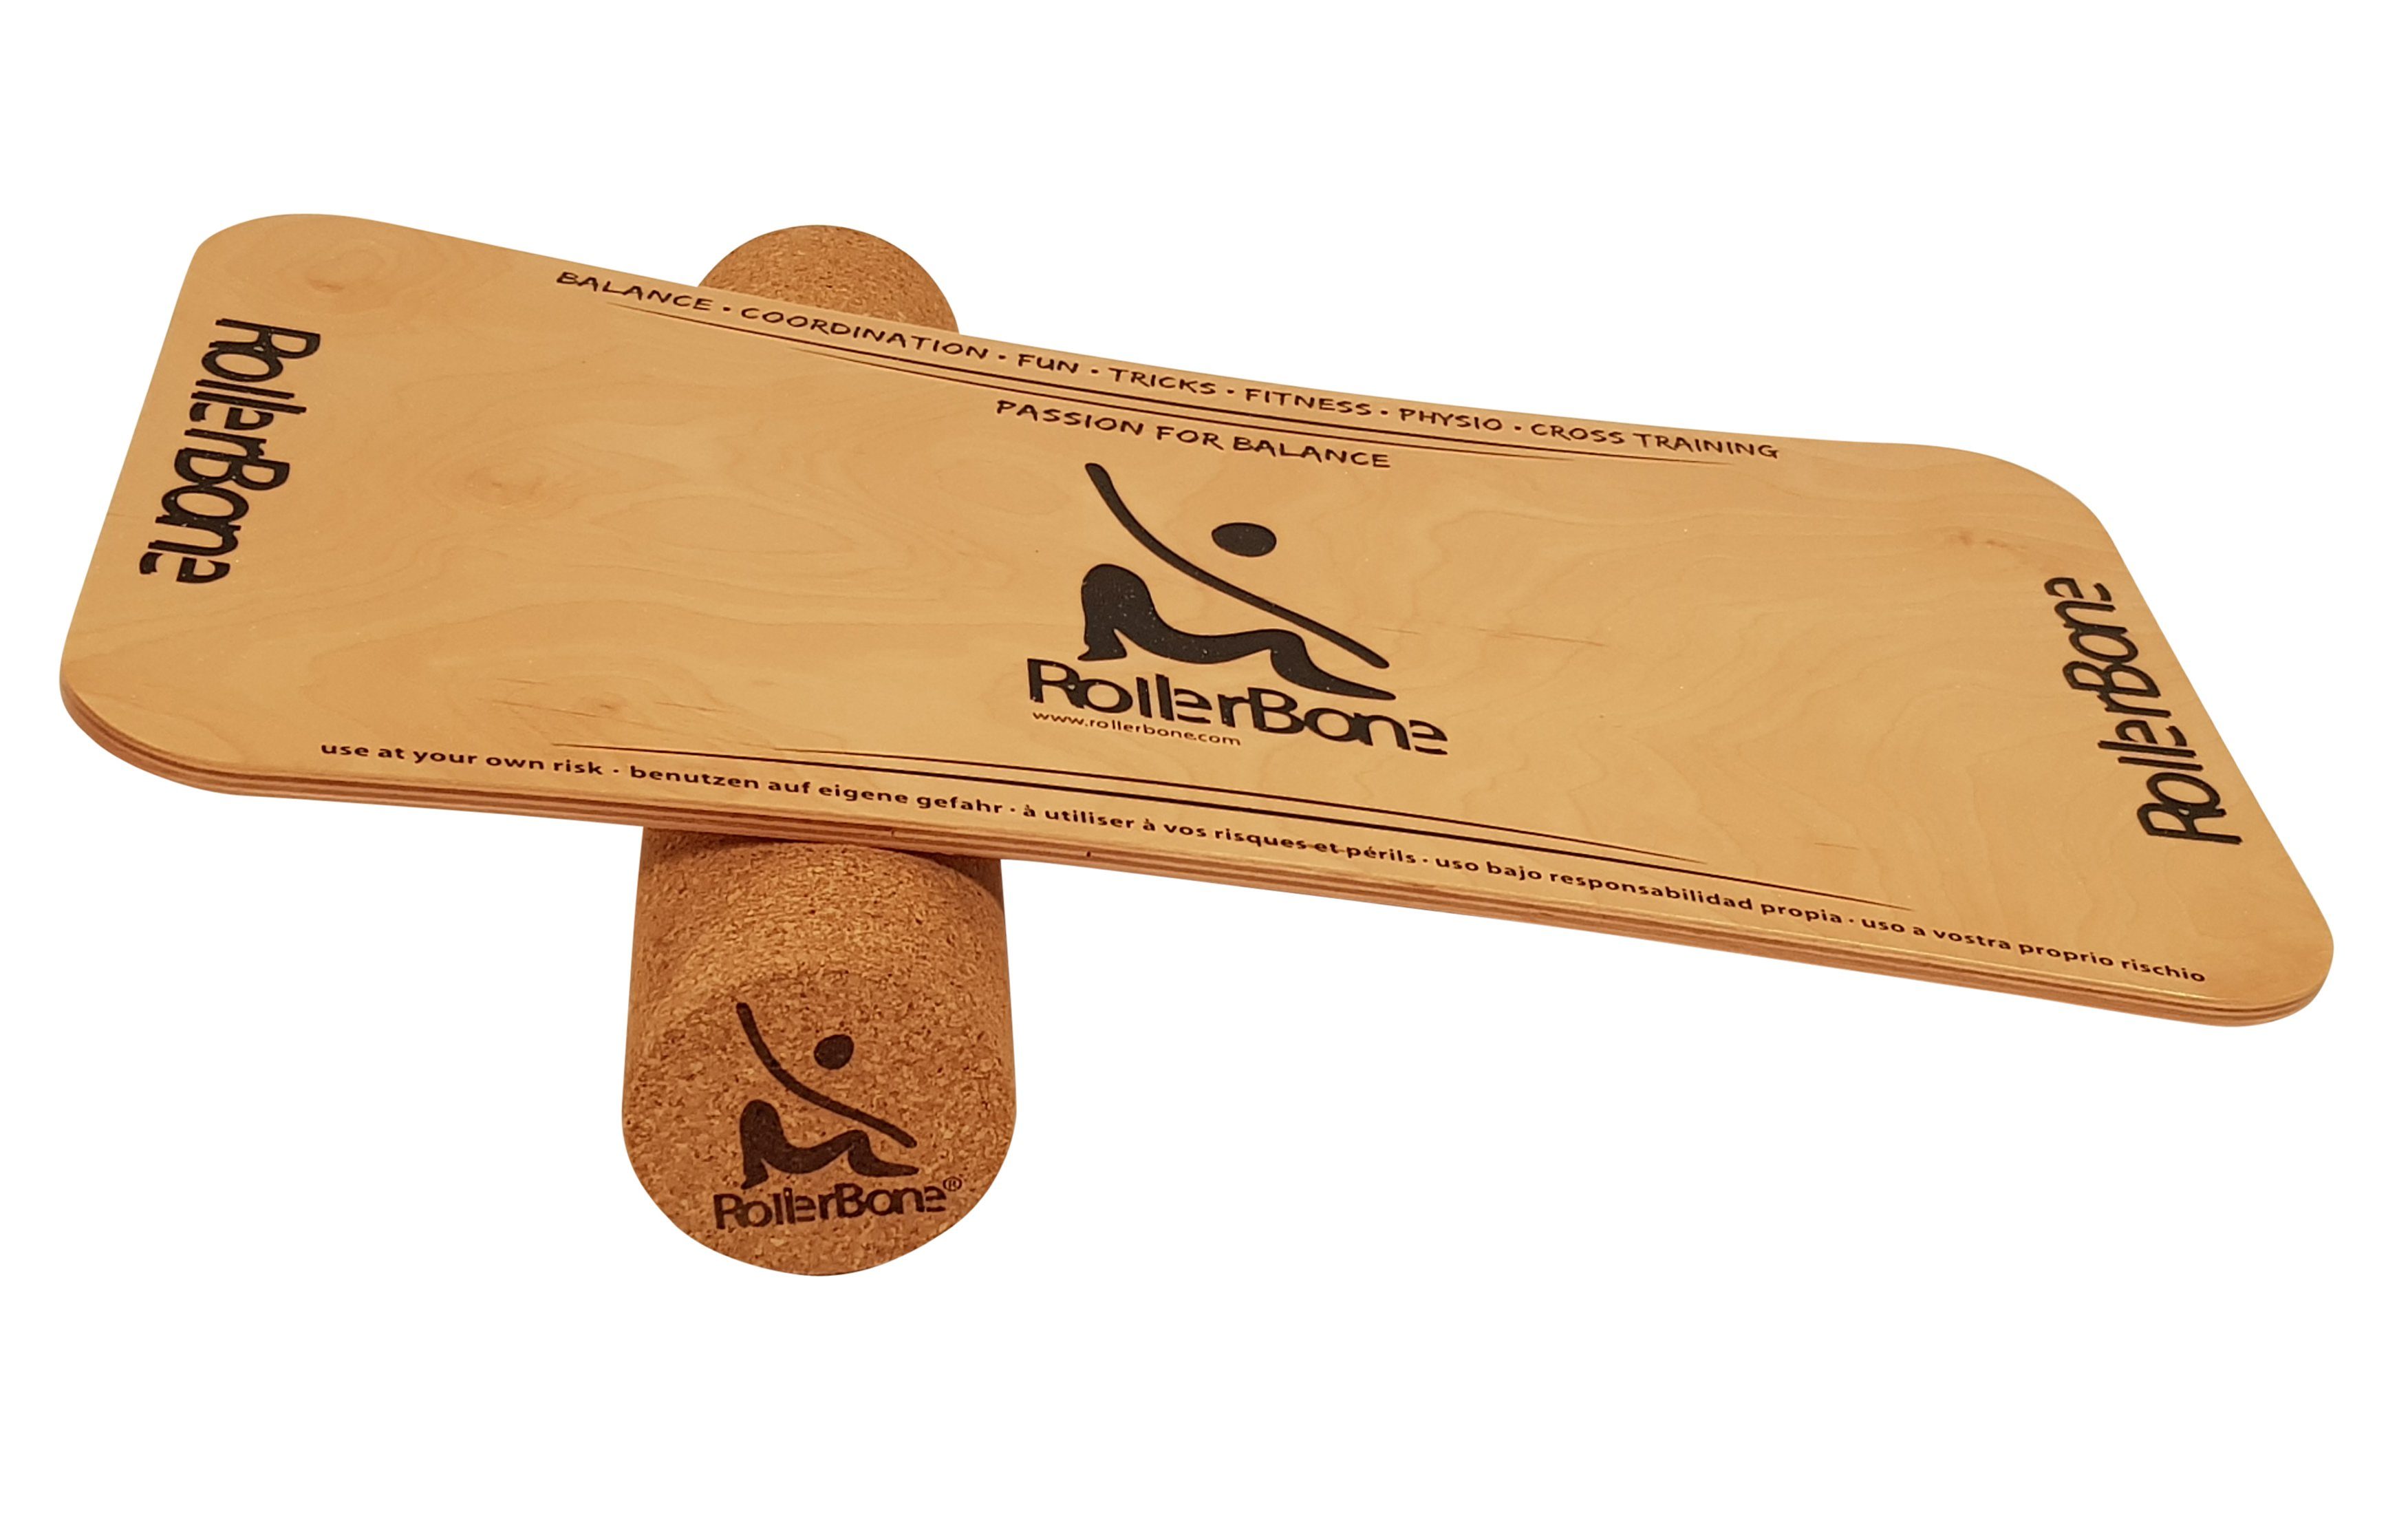 Material nachhaltiges Balance-Board Holz Set & aus & Kork Holz Ahorn natürliches Balanceboard Material Ahorn RollerBone Kork, RollerBone